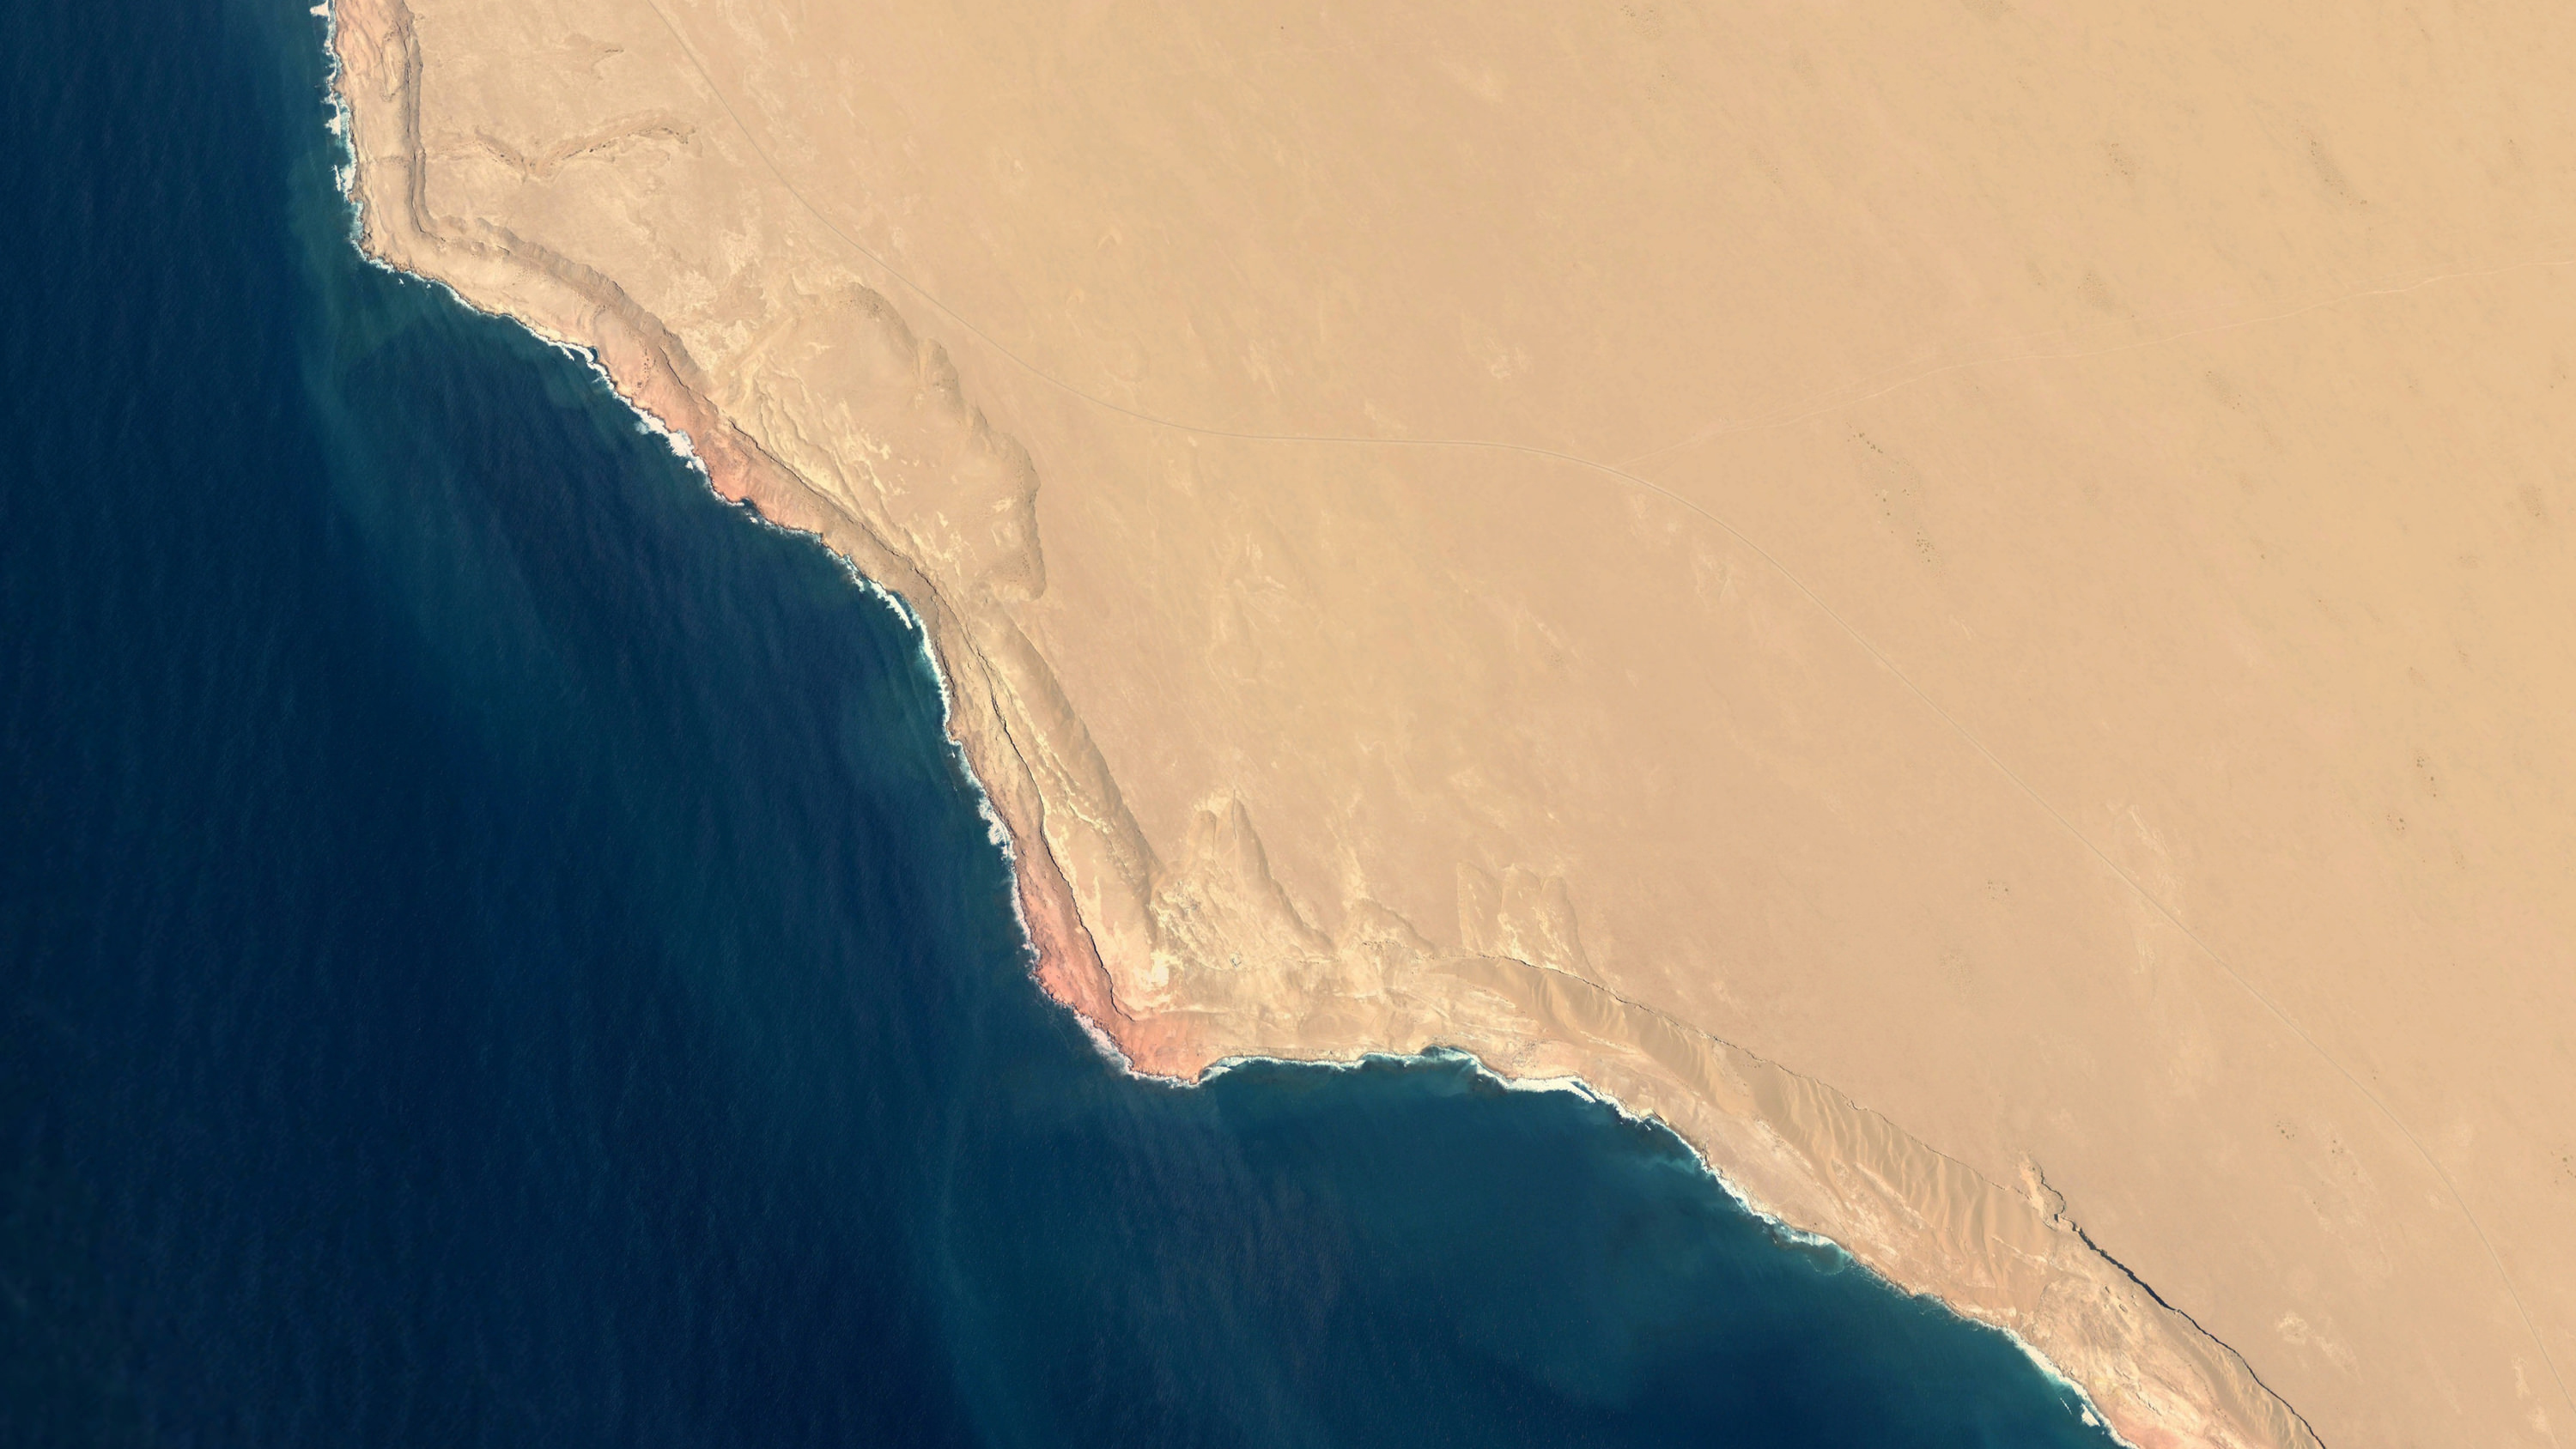 sfondo di google earth,costa,mare,acqua,capo,promontorio